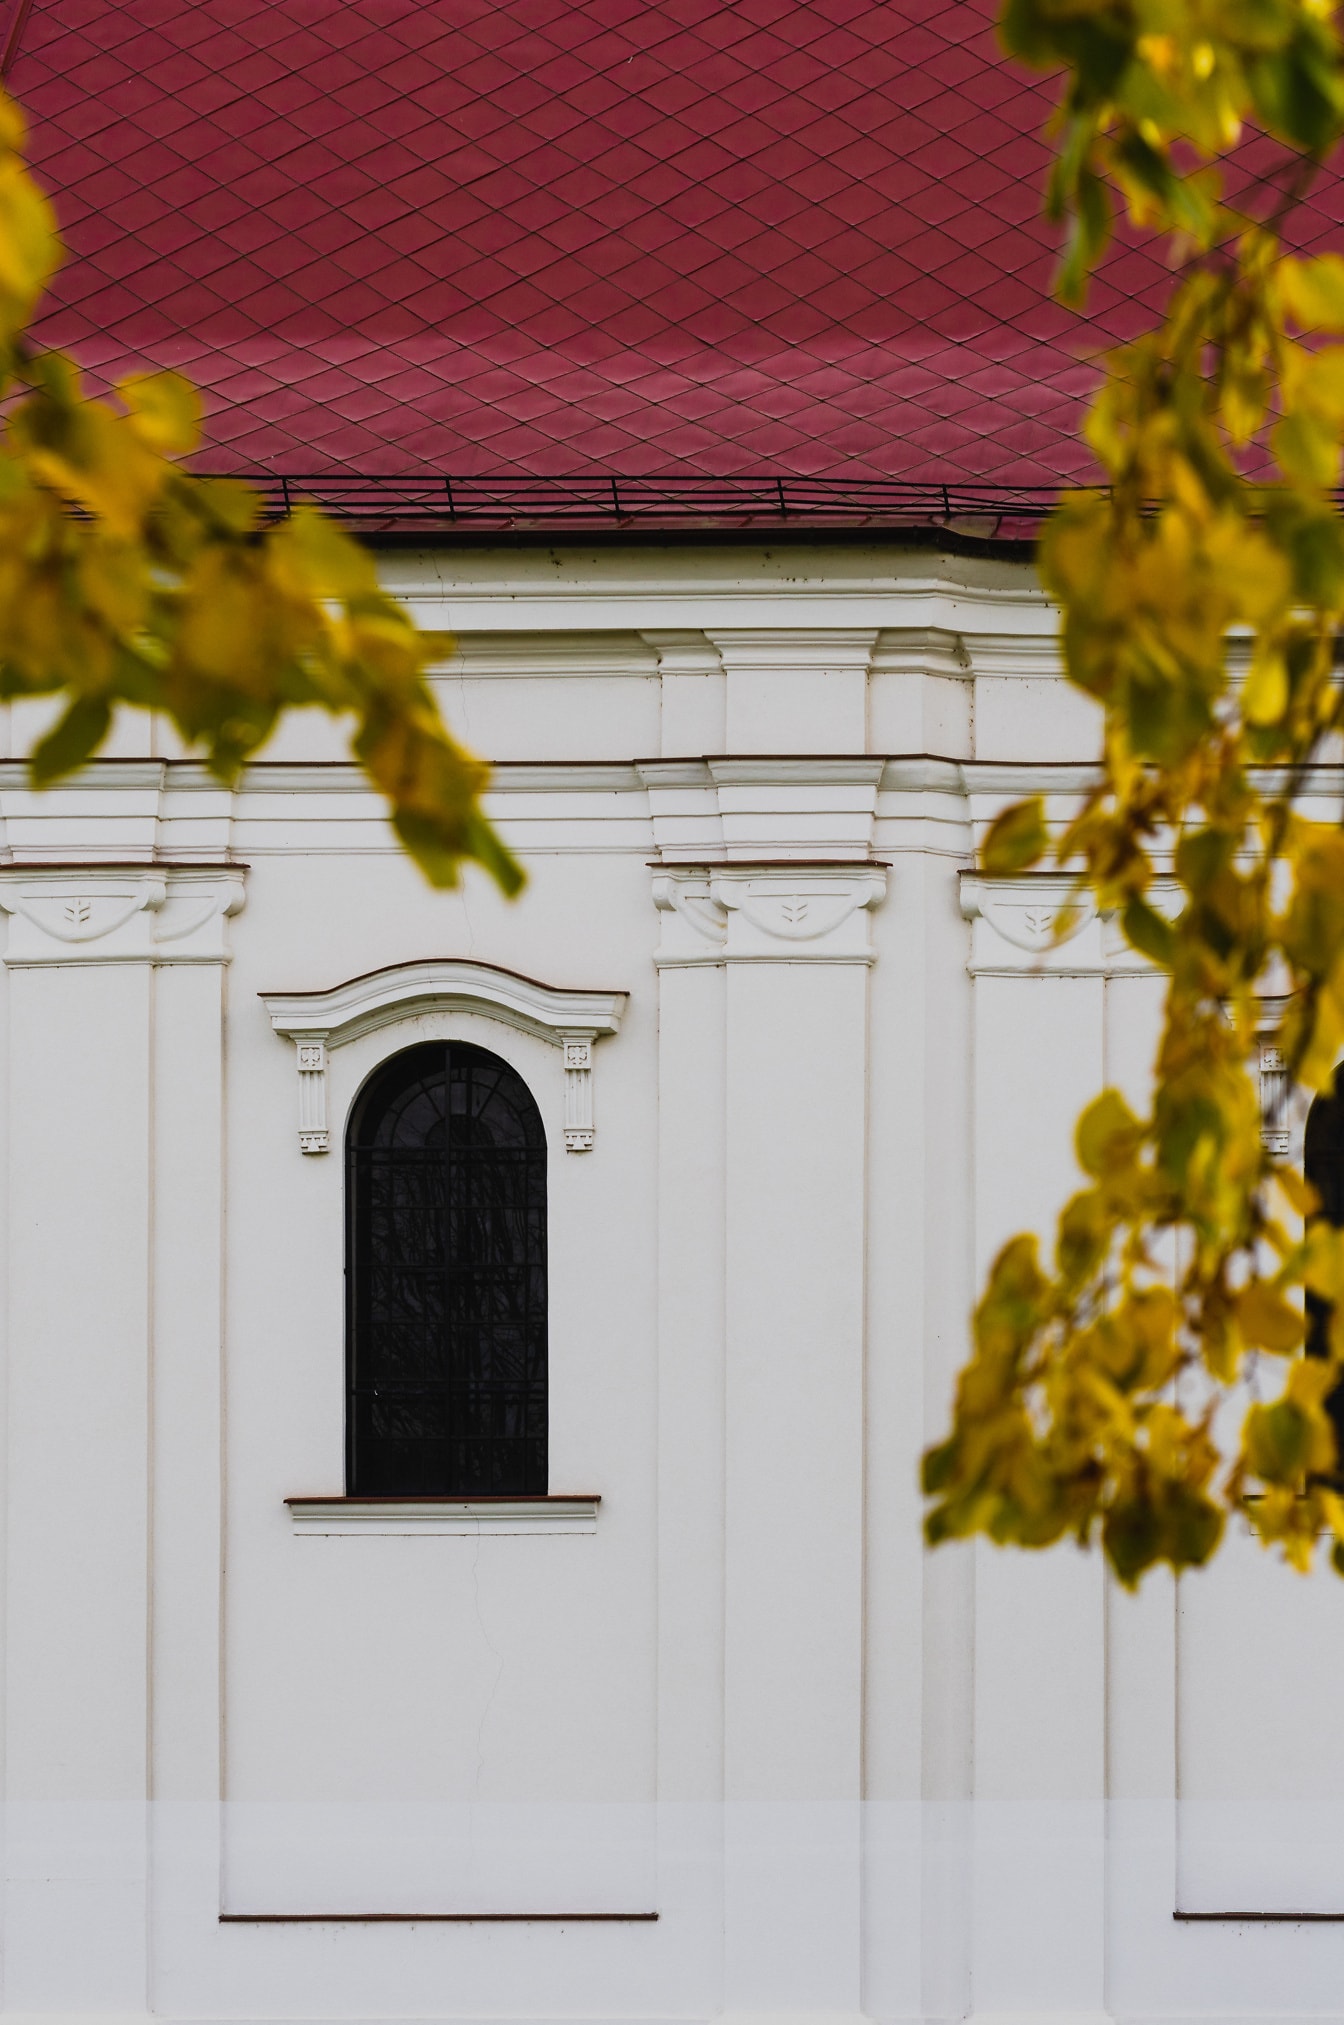 Fenster mit Schutznetz an einer orthodoxen Kirche abgedeckt